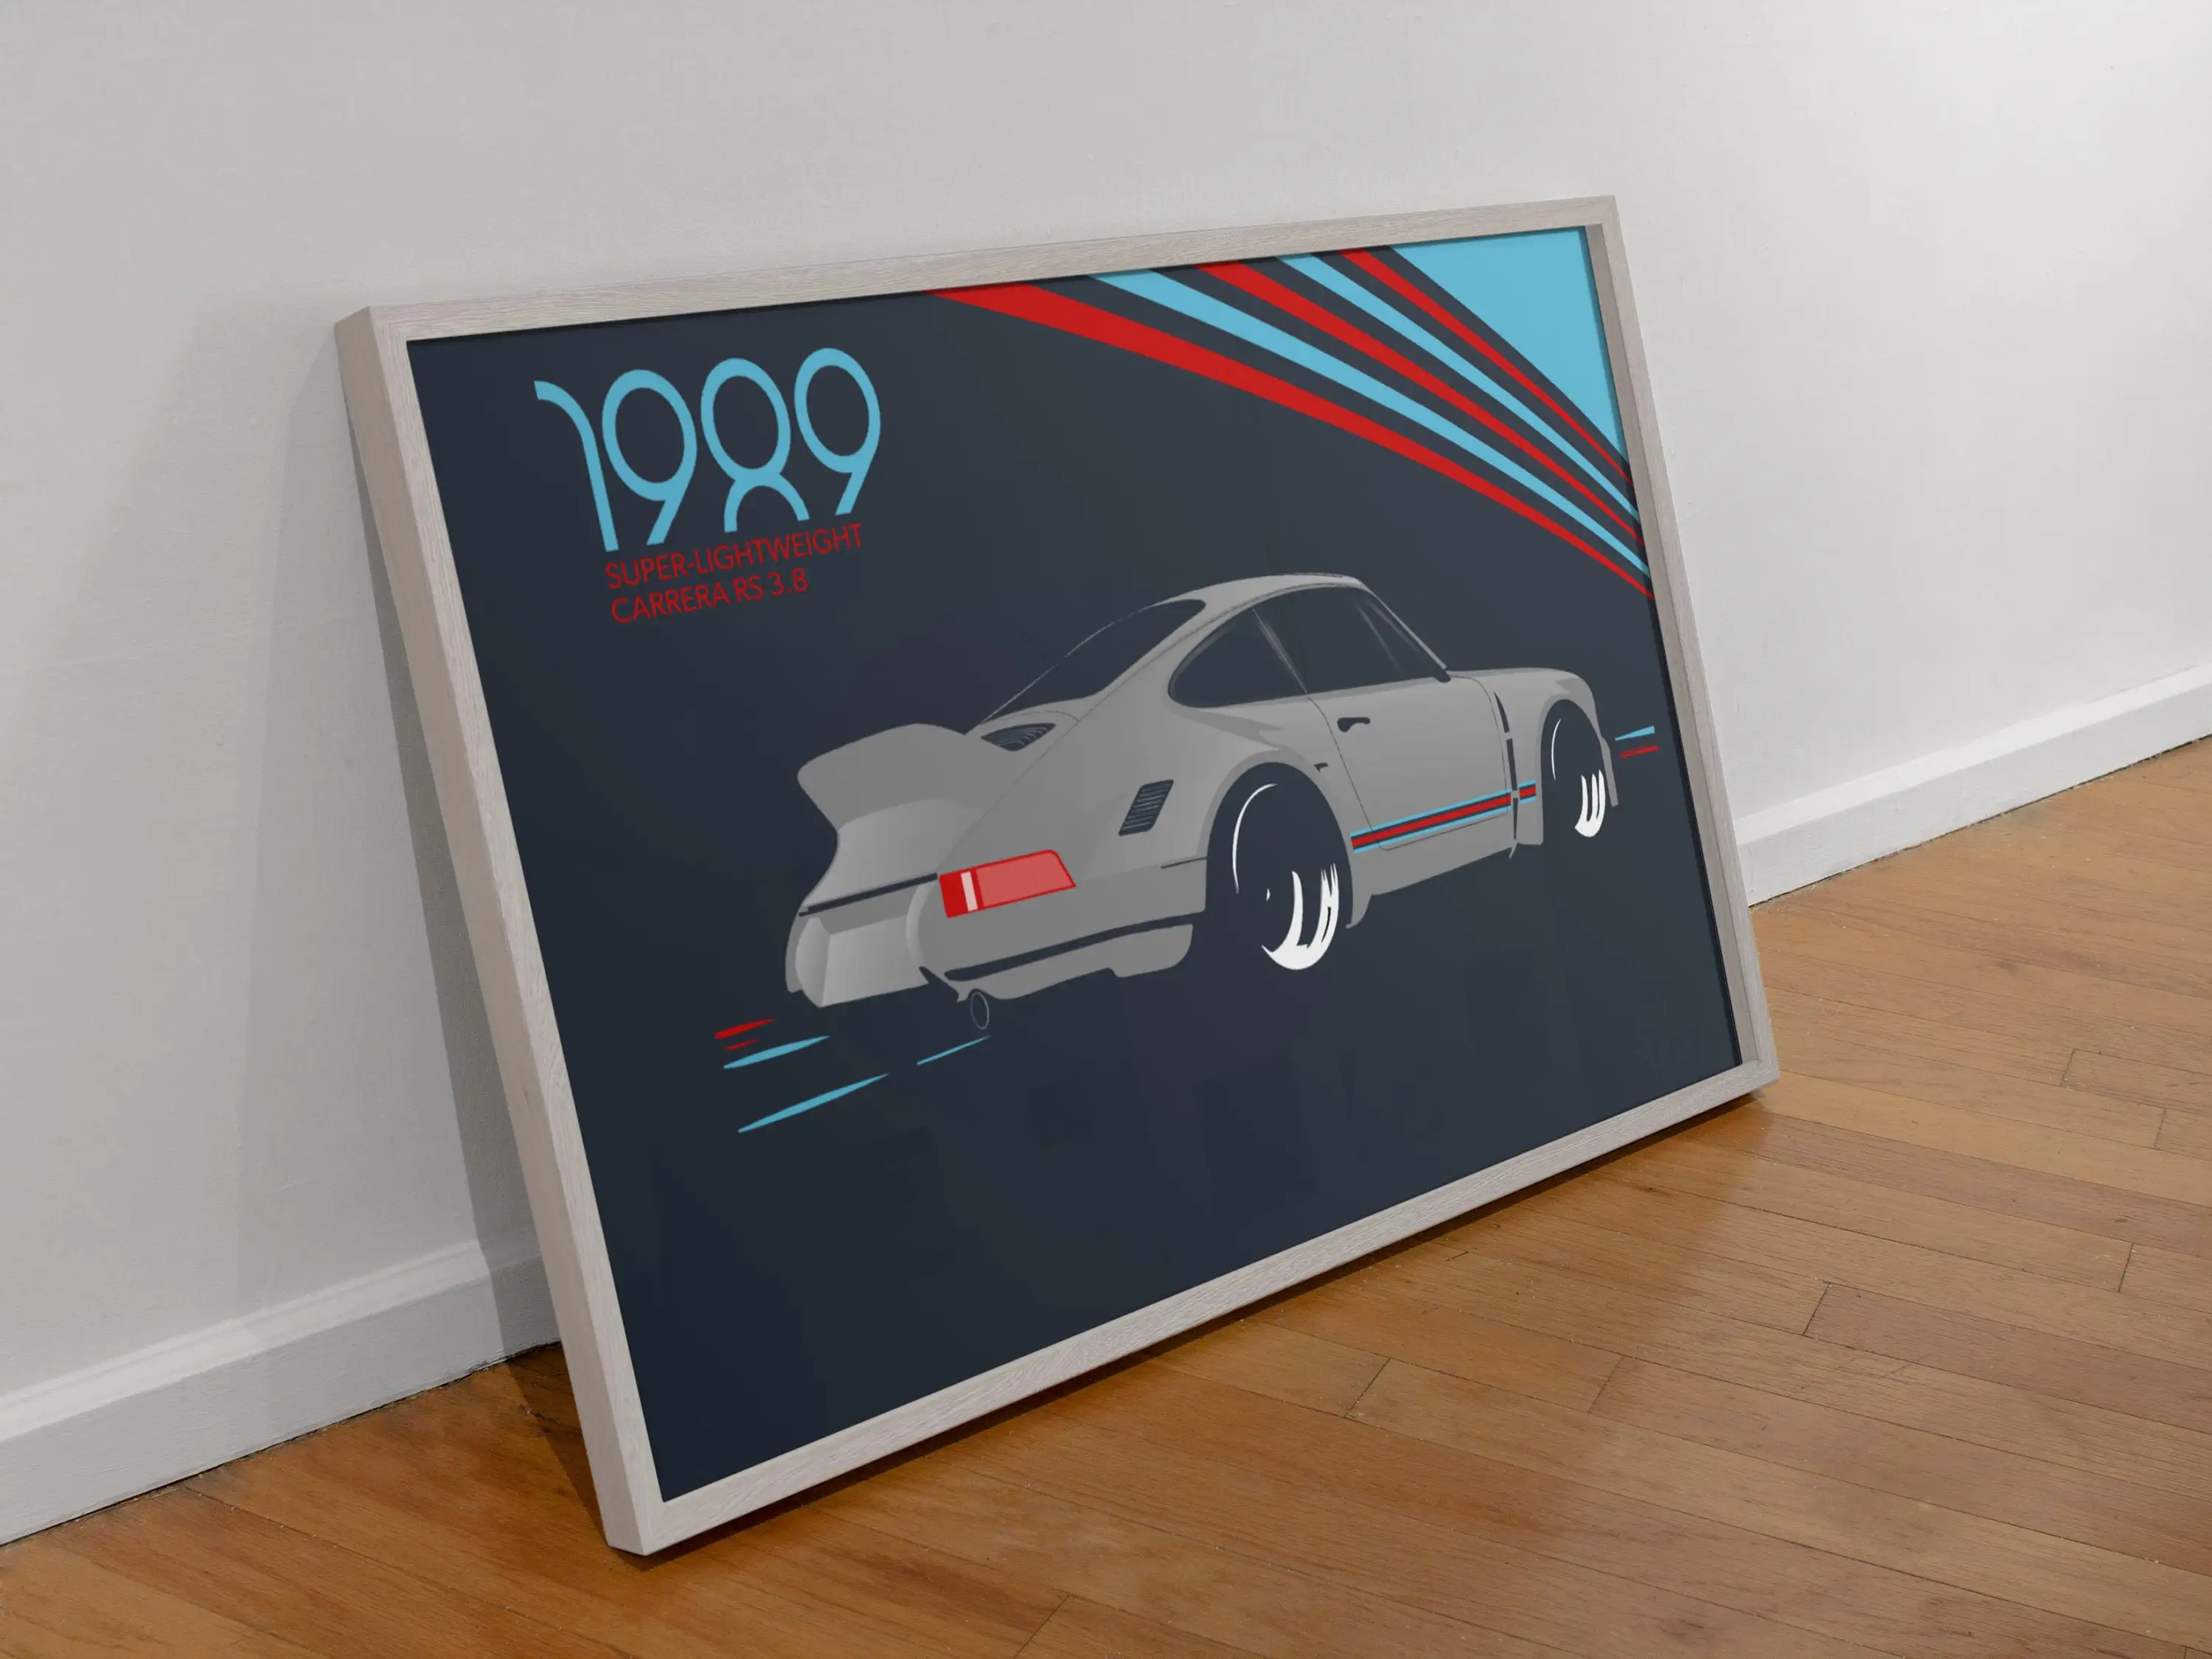 Art Poster Porsche GT911 car Graffiti Style